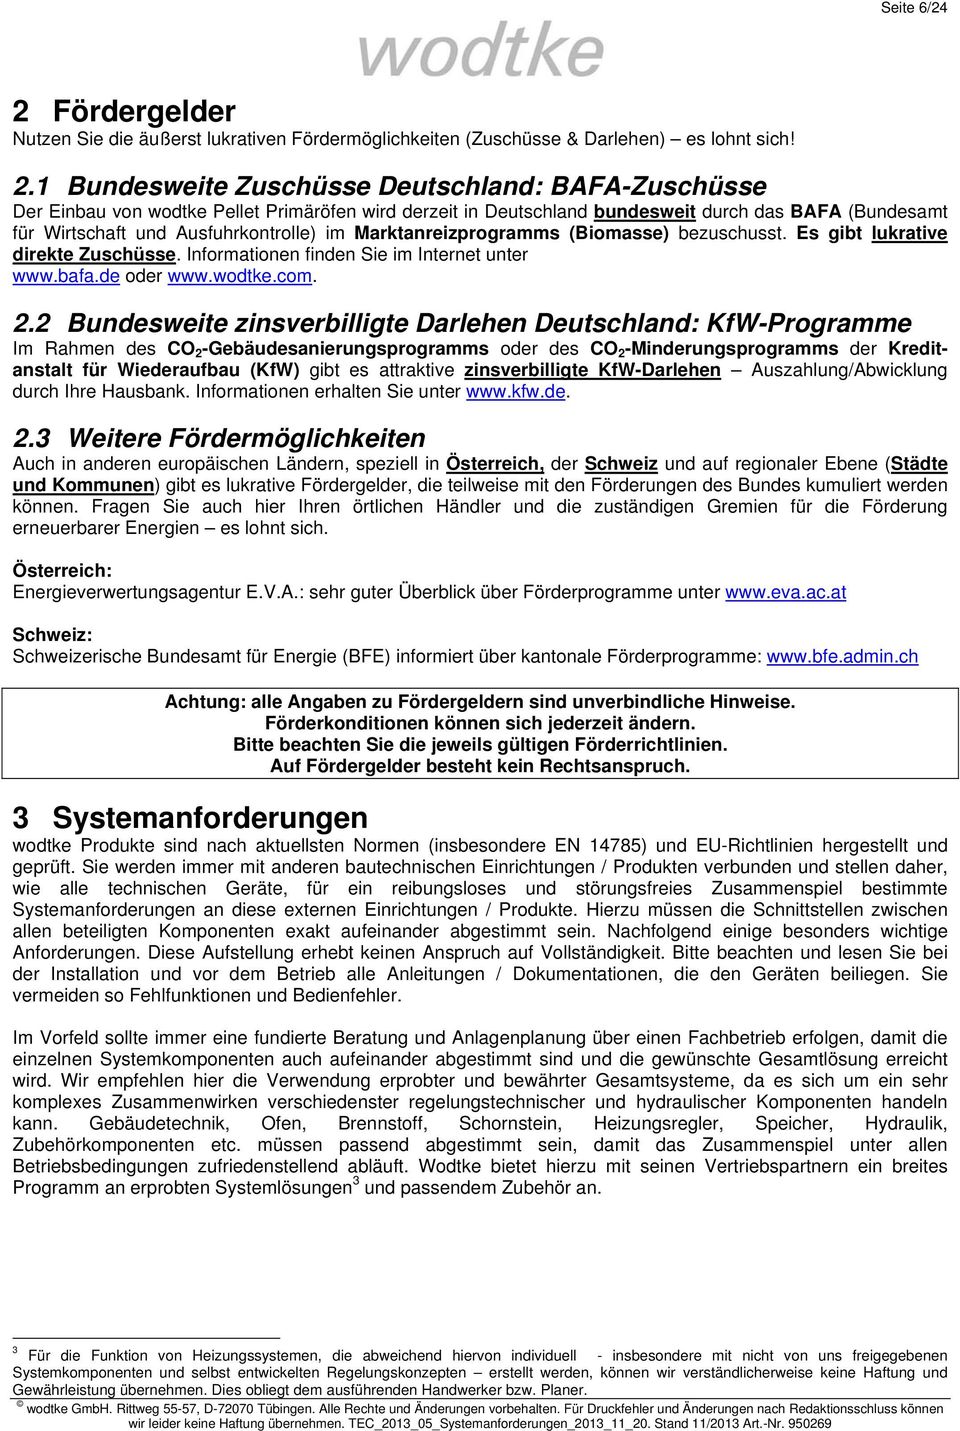 1 Bundesweite Zuschüsse Deutschland: BAFA-Zuschüsse Der Einbau von wodtke Pellet Primäröfen wird derzeit in Deutschland bundesweit durch das BAFA (Bundesamt für Wirtschaft und Ausfuhrkontrolle) im